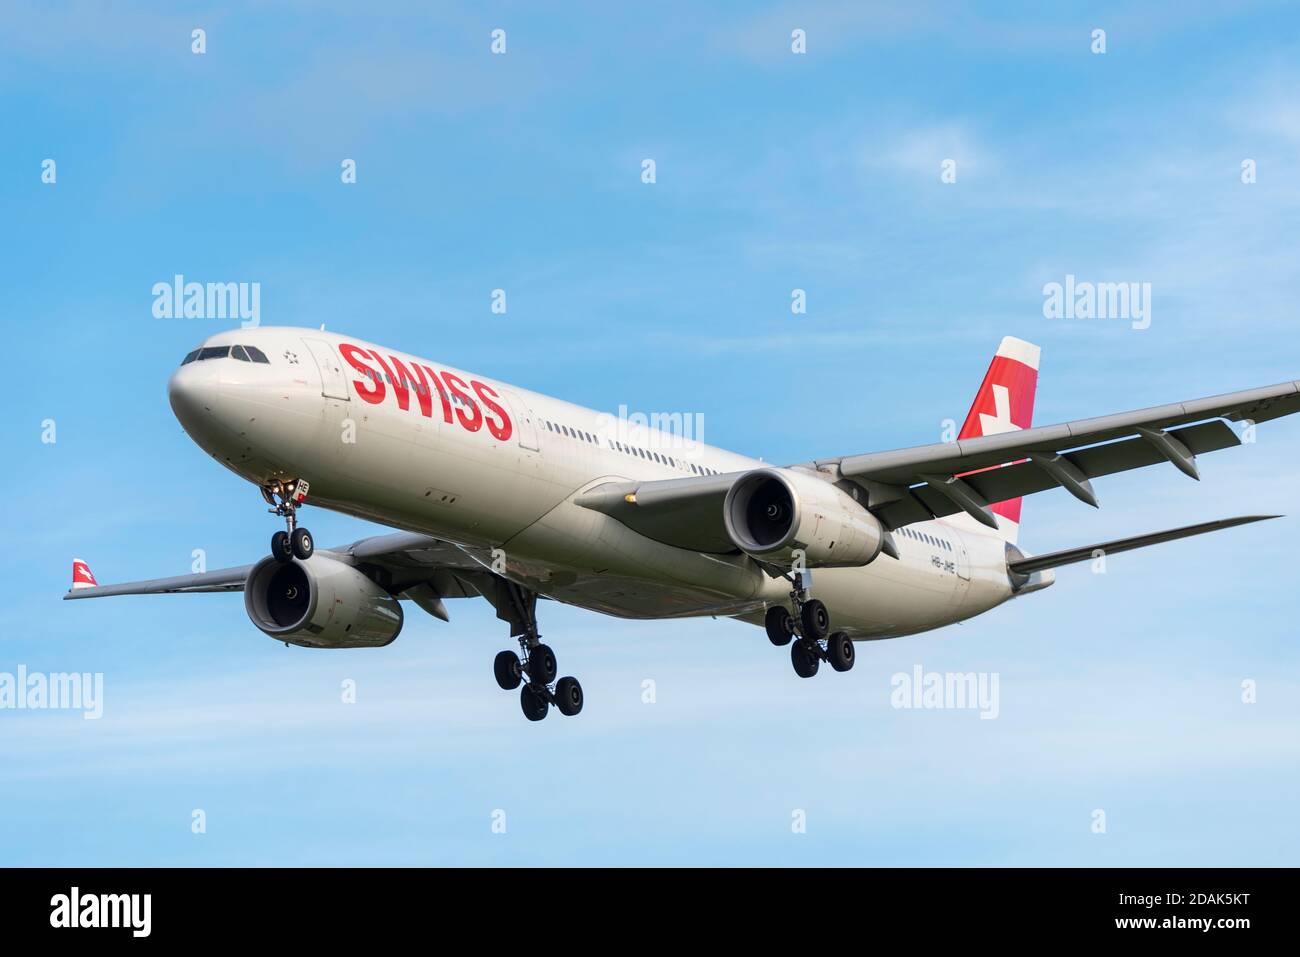 Swiss International Air Lines A330 avion de ligne en approche à l'atterrissage à l'aéroport de Londres Heathrow, Royaume-Uni, lors du deuxième confinement national de la COVID 19 Banque D'Images